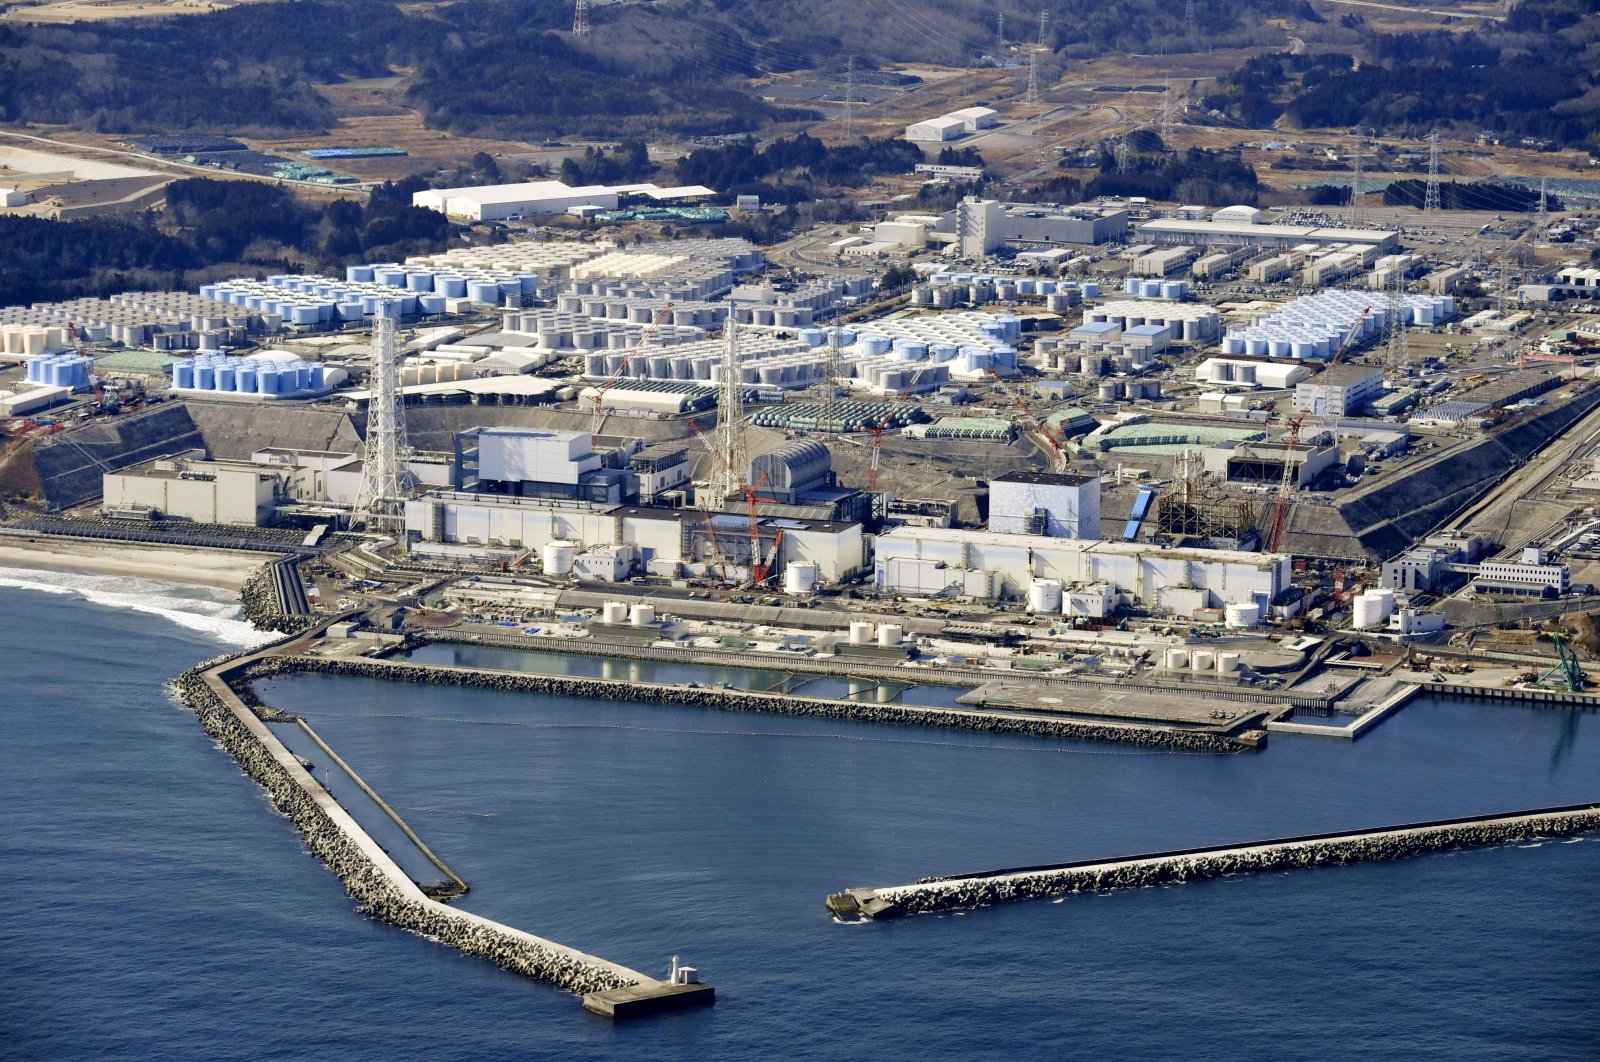 Sinyal Jepang kembali ke tenaga nuklir dalam upaya untuk mengatasi krisis energi